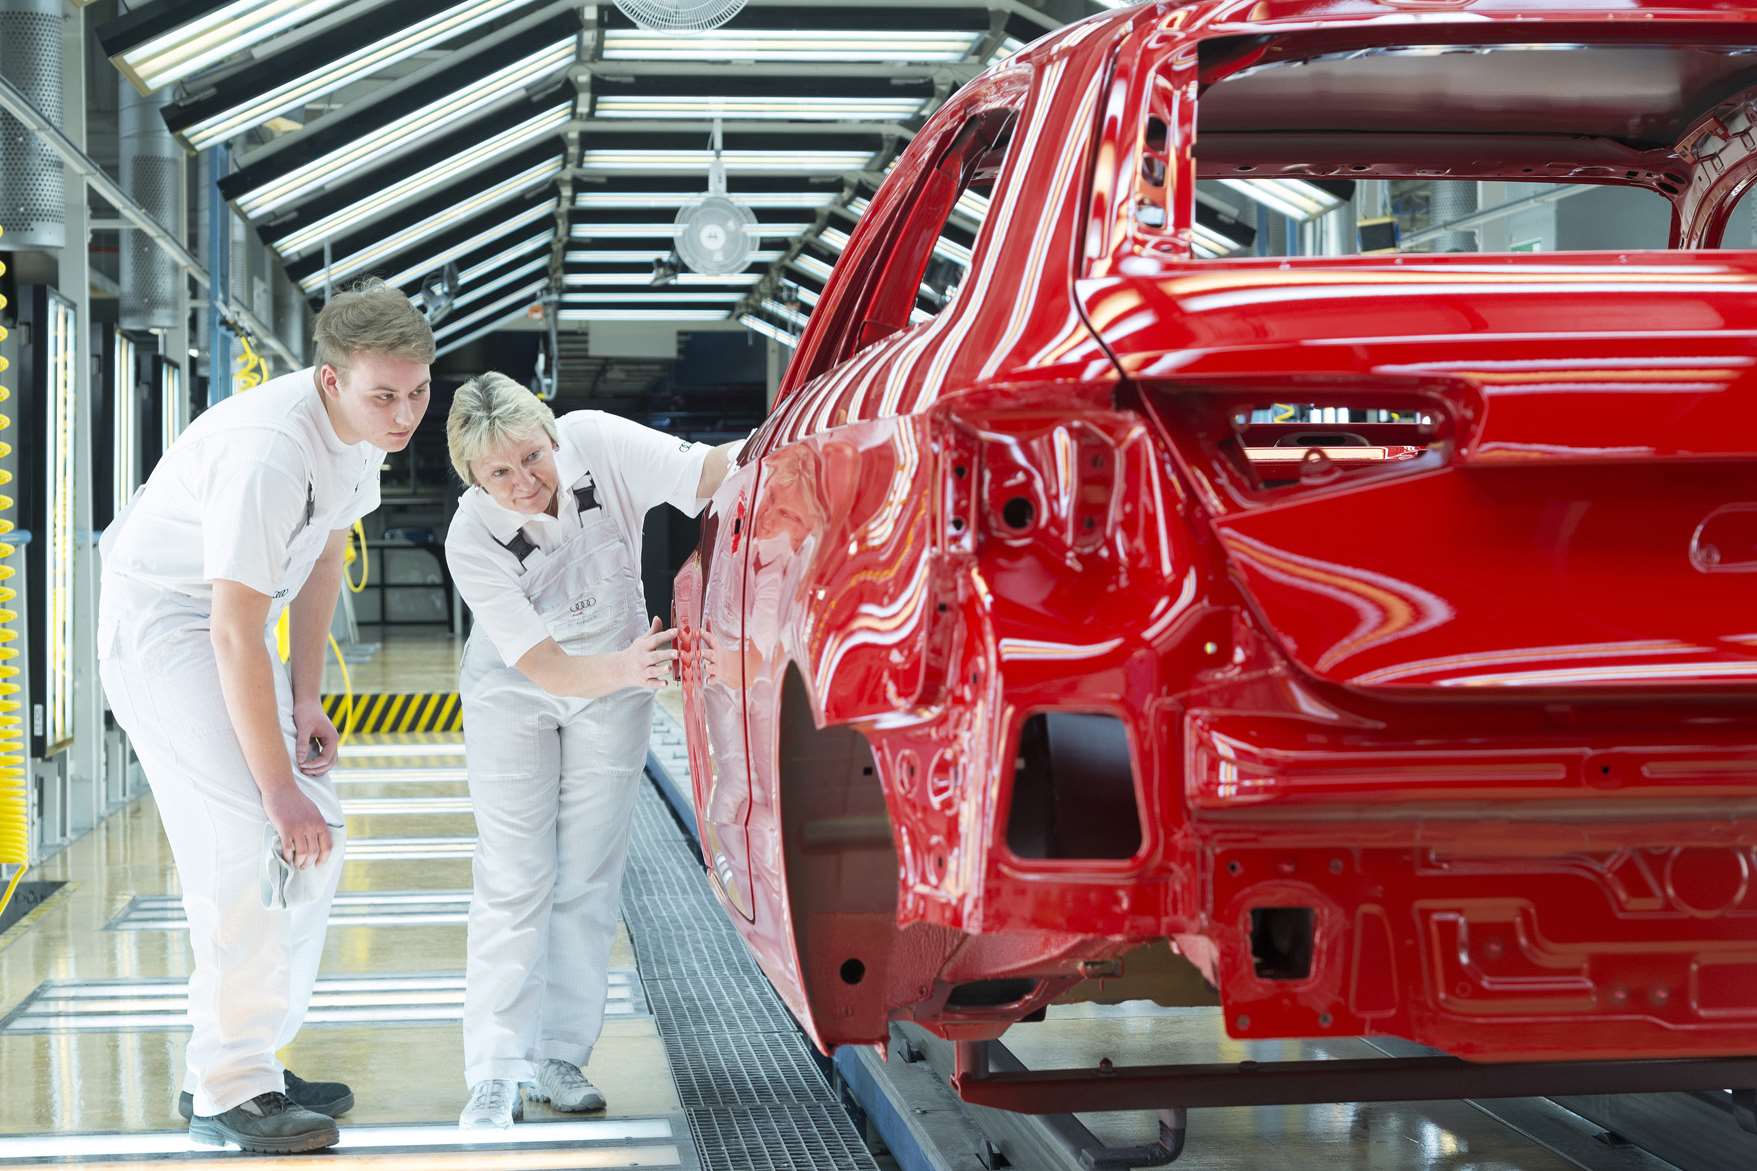 The Audi A3 production line